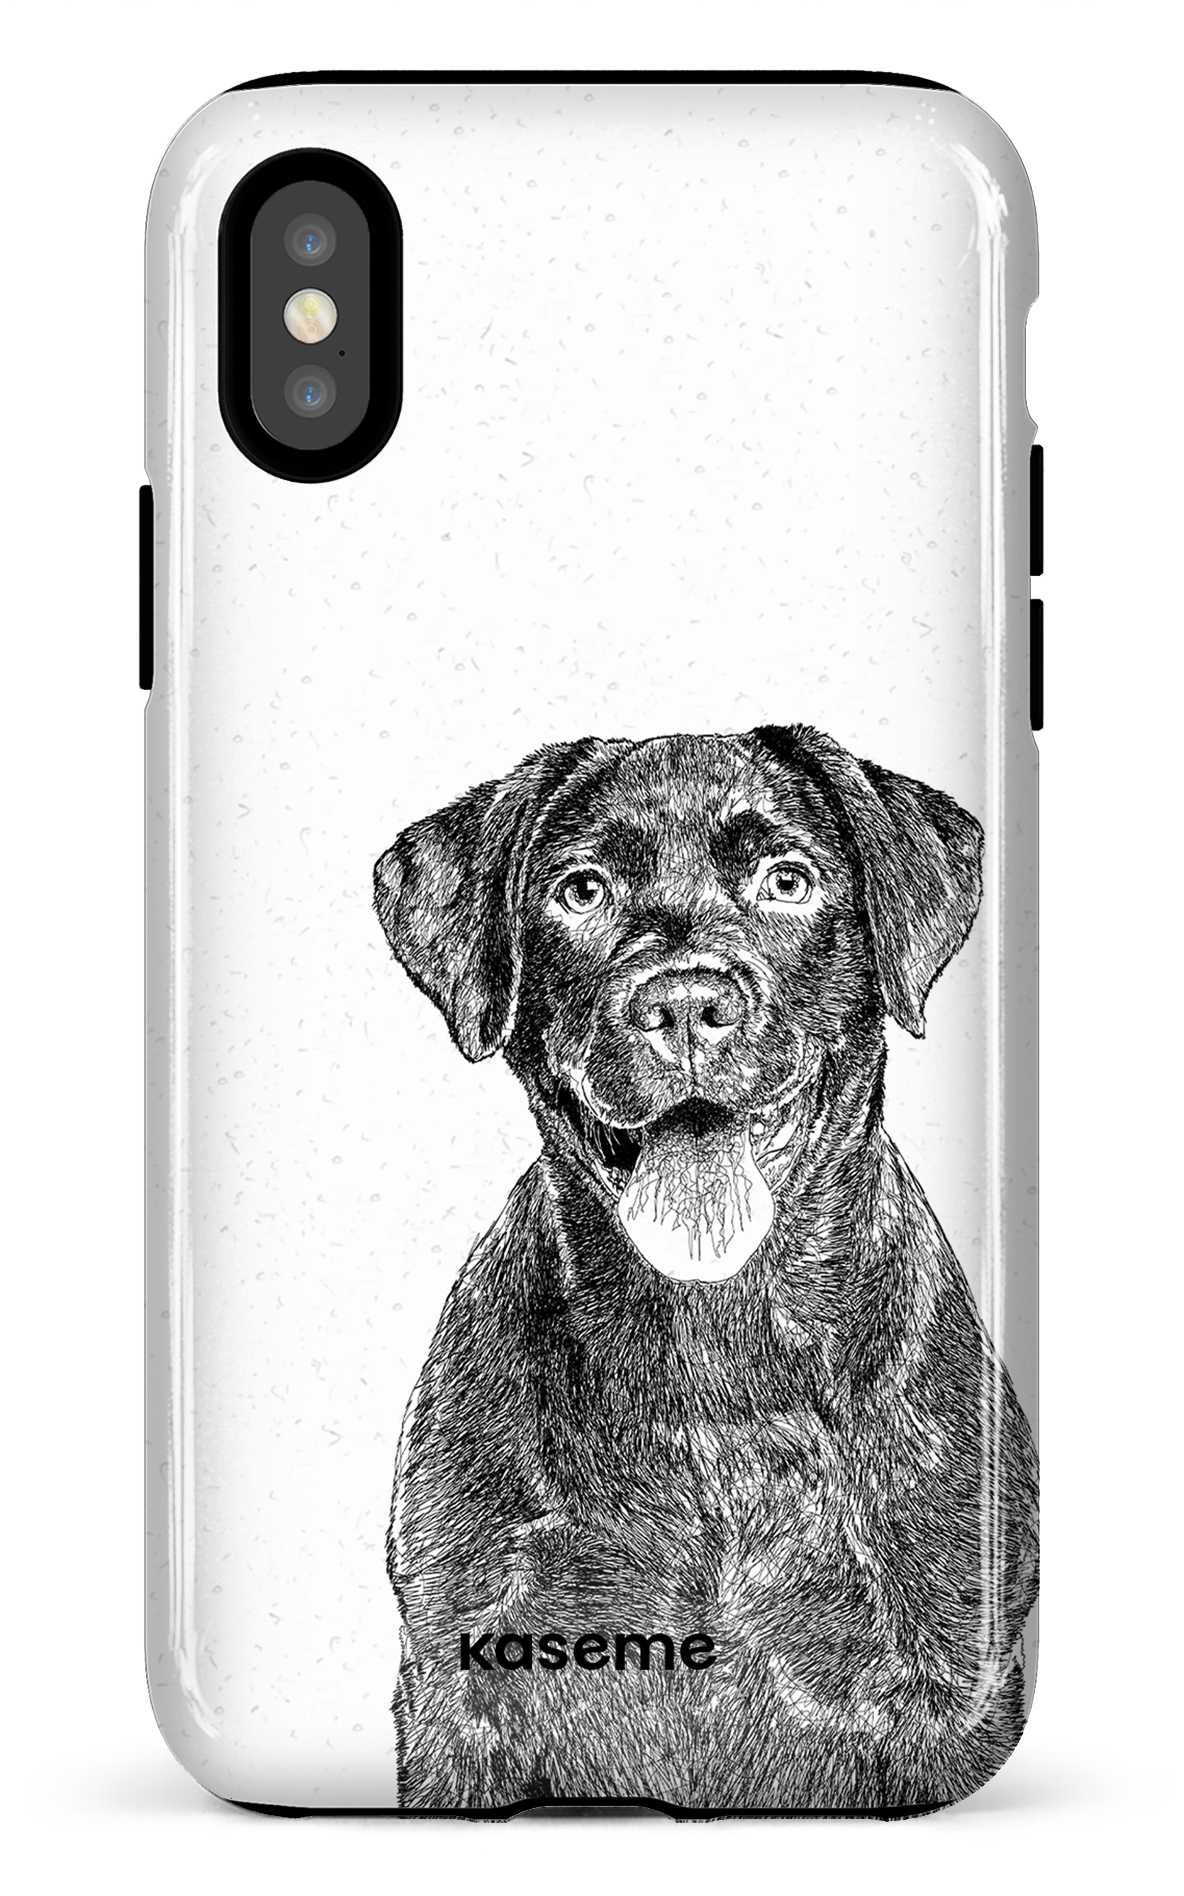 Labrador Retriever - iPhone X/Xs